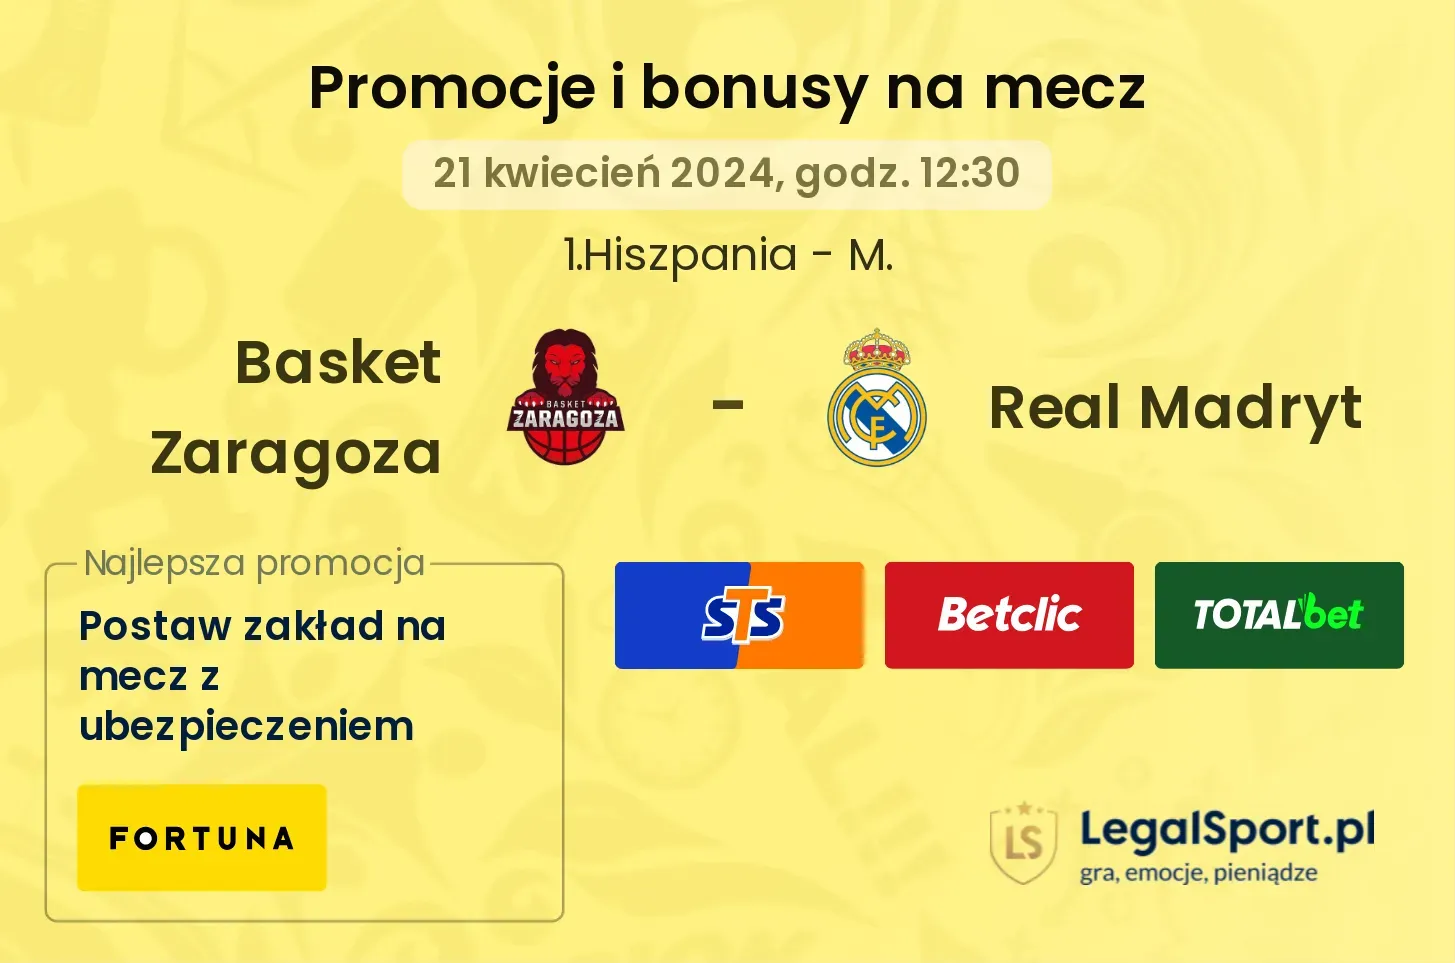 Basket Zaragoza - Real Madryt promocje bonusy na mecz